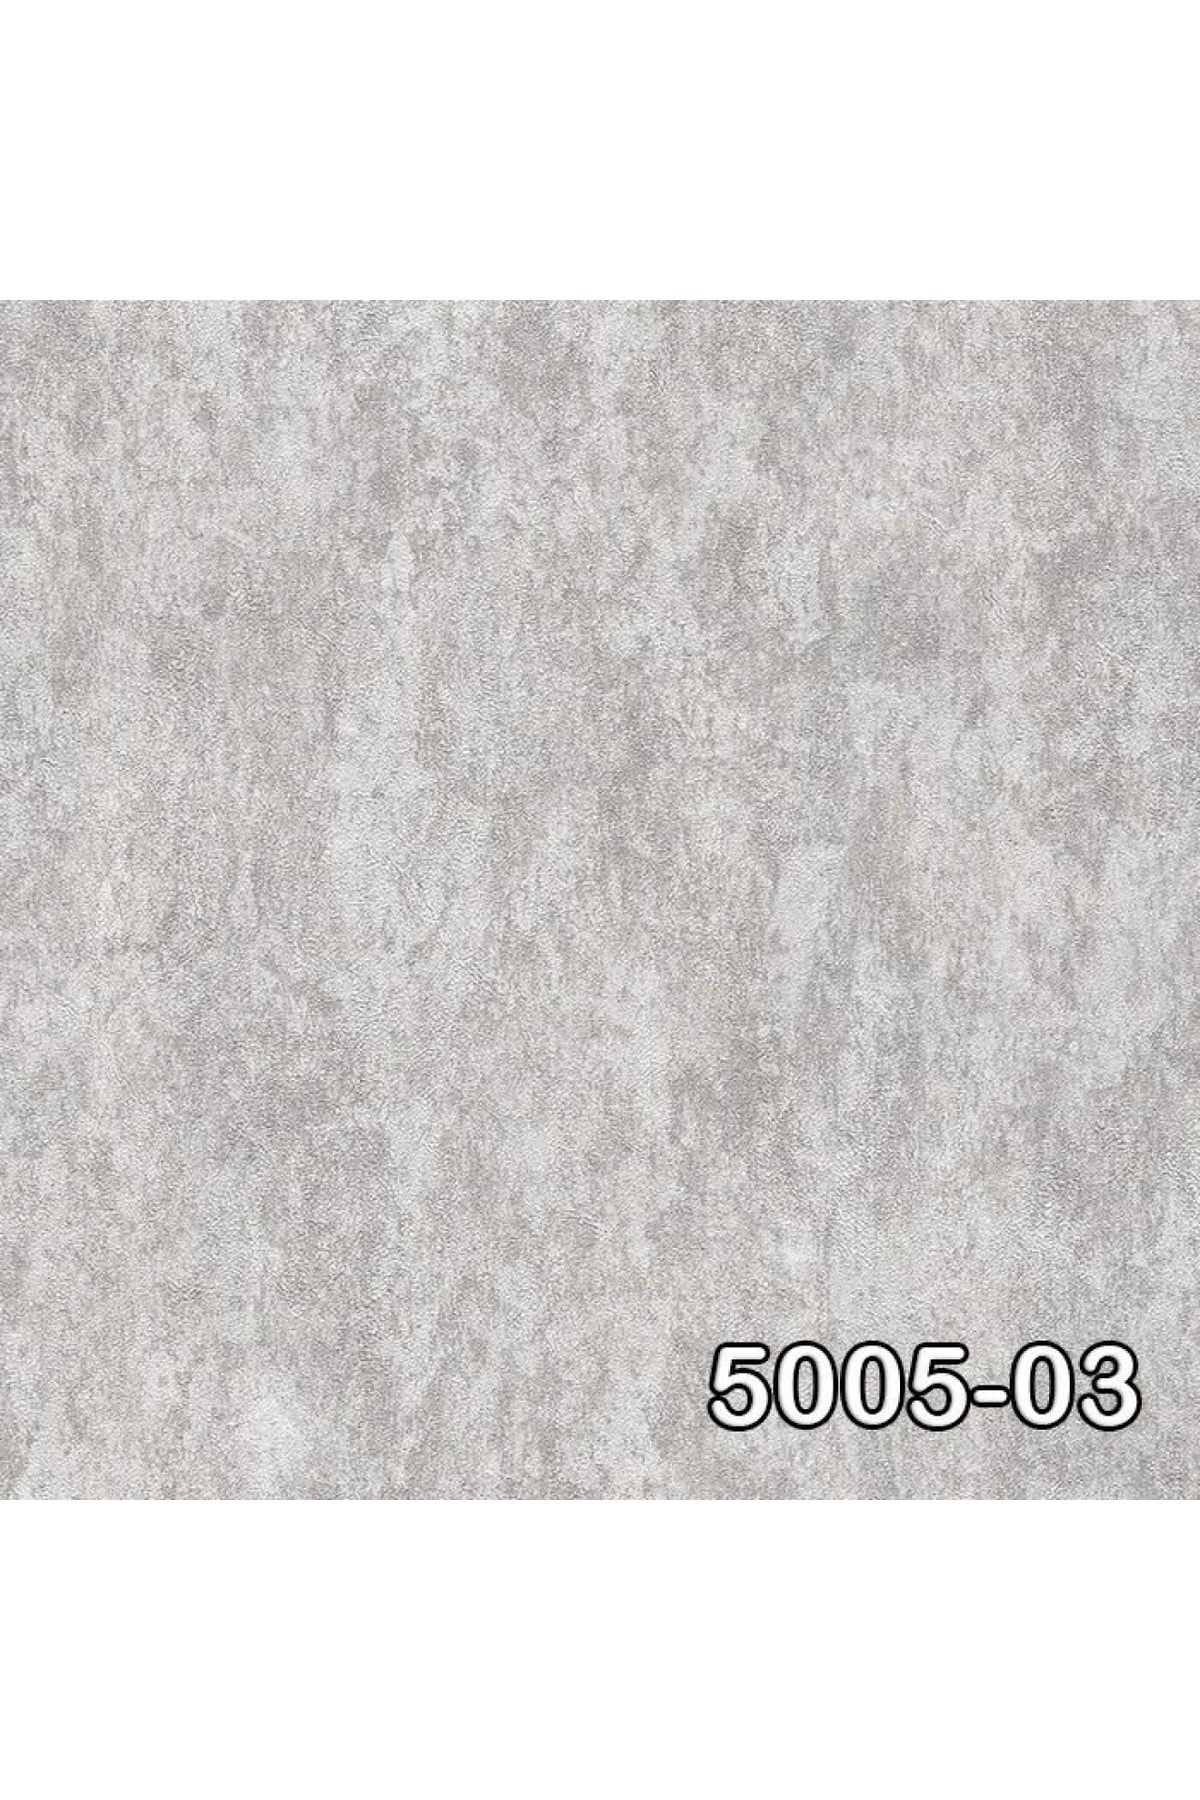 Decowall Decoparati Düz Desenli Gri Retro Duvar Kağıdı 5005-03